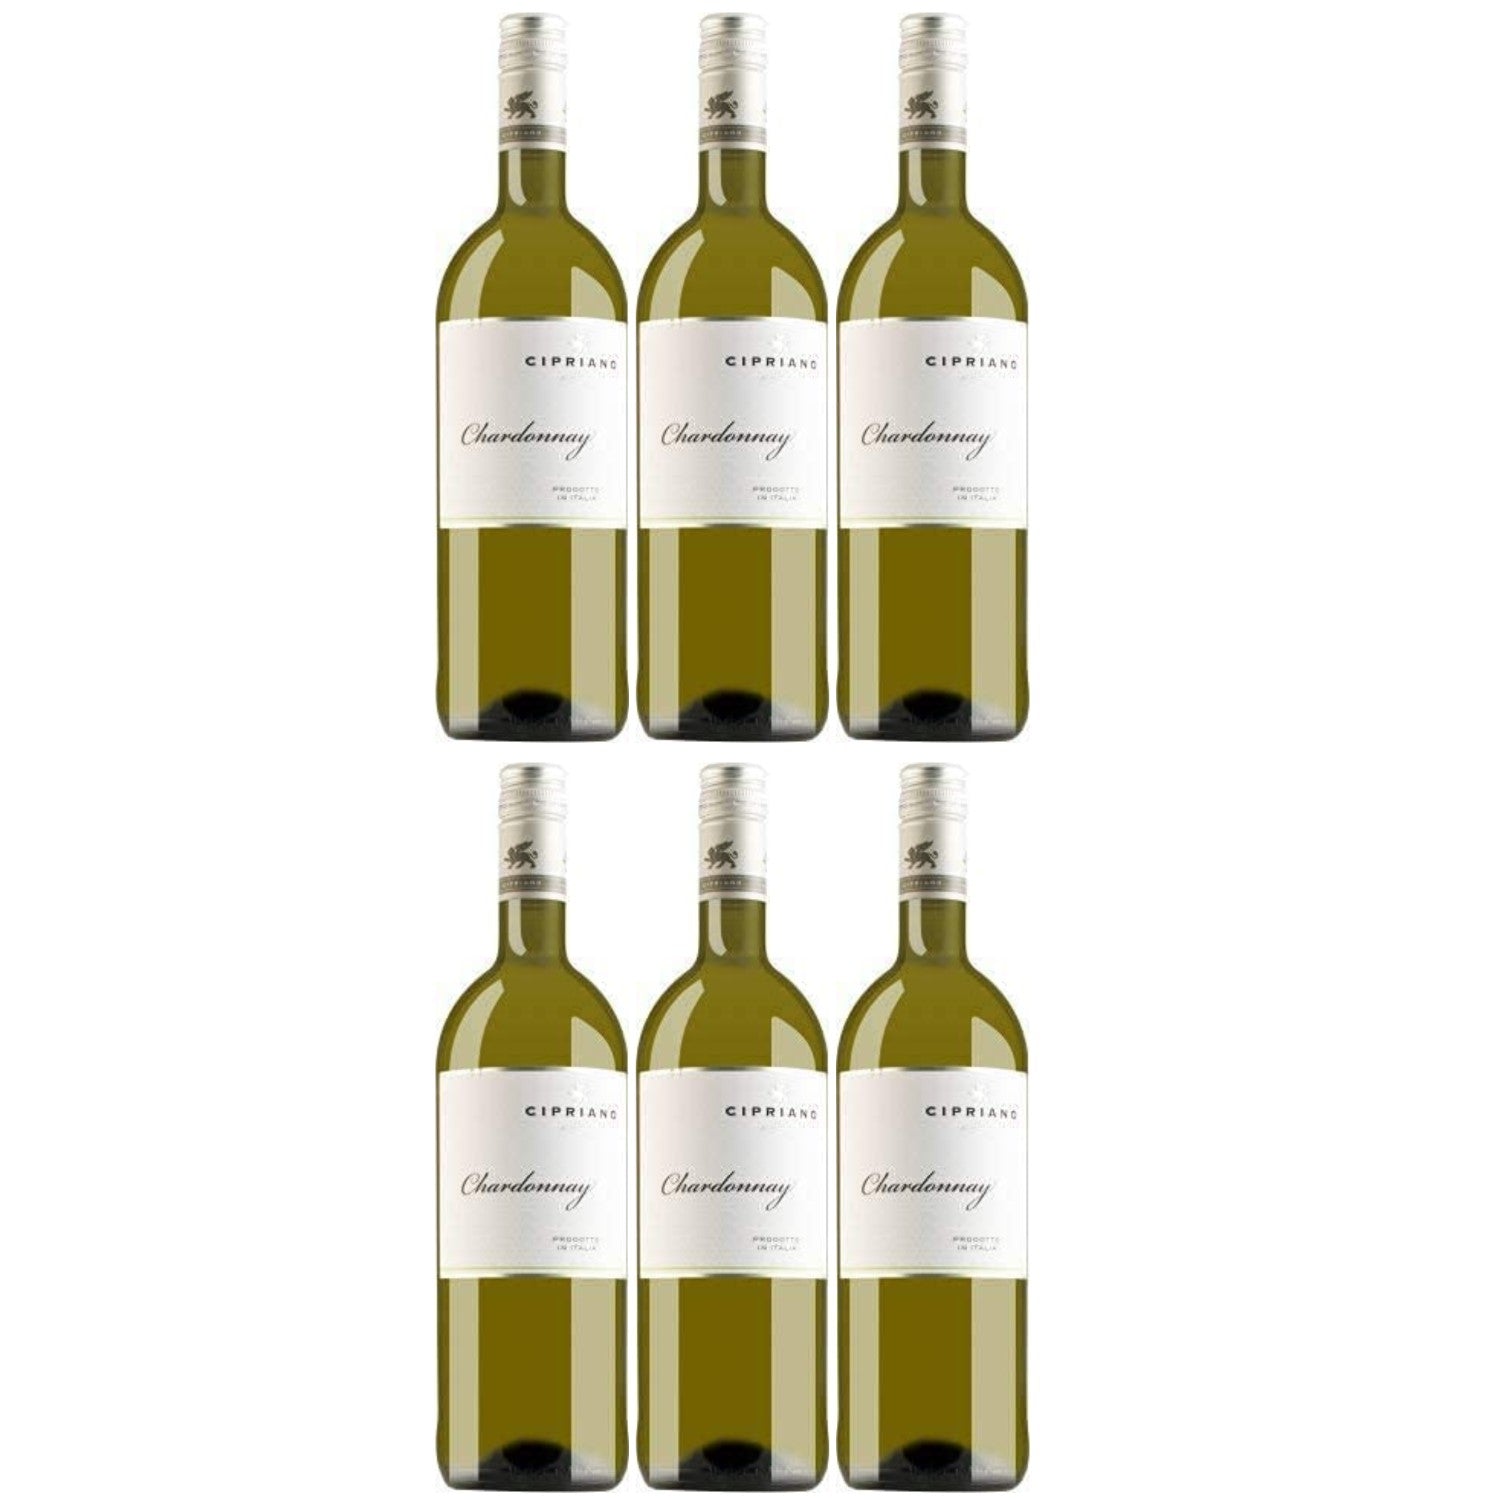 Cipriano Chardonnay Veneto Weißwein italienischer Wein trocken IGT Italien (6 x 1.0l) - Versanel -